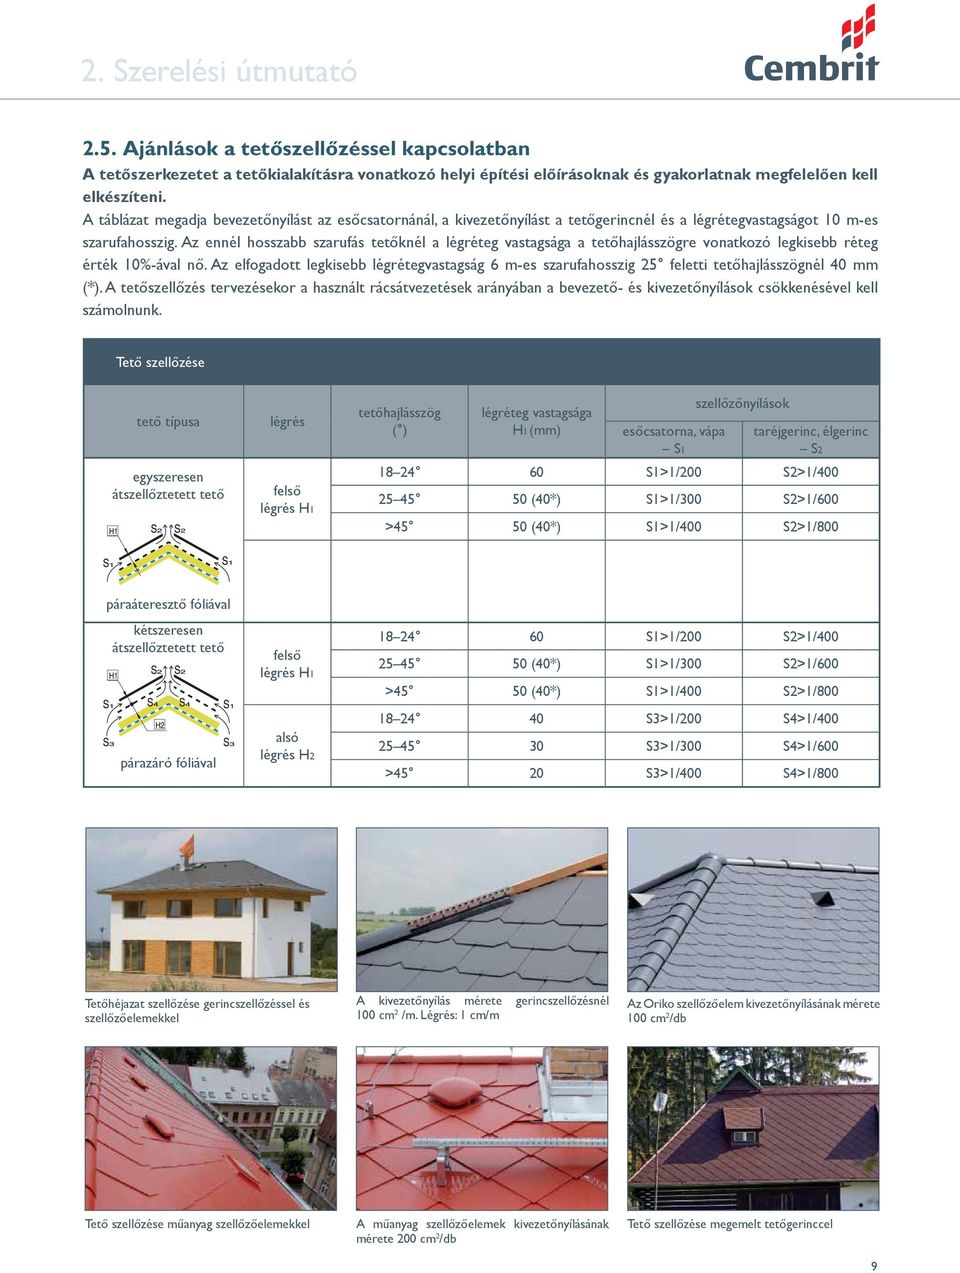 Az ennél hosszabb szarufás tetőknél a légréteg vastagsága a tetőhajlásszögre vonatkozó legkisebb réteg érték 10%-ával nő.